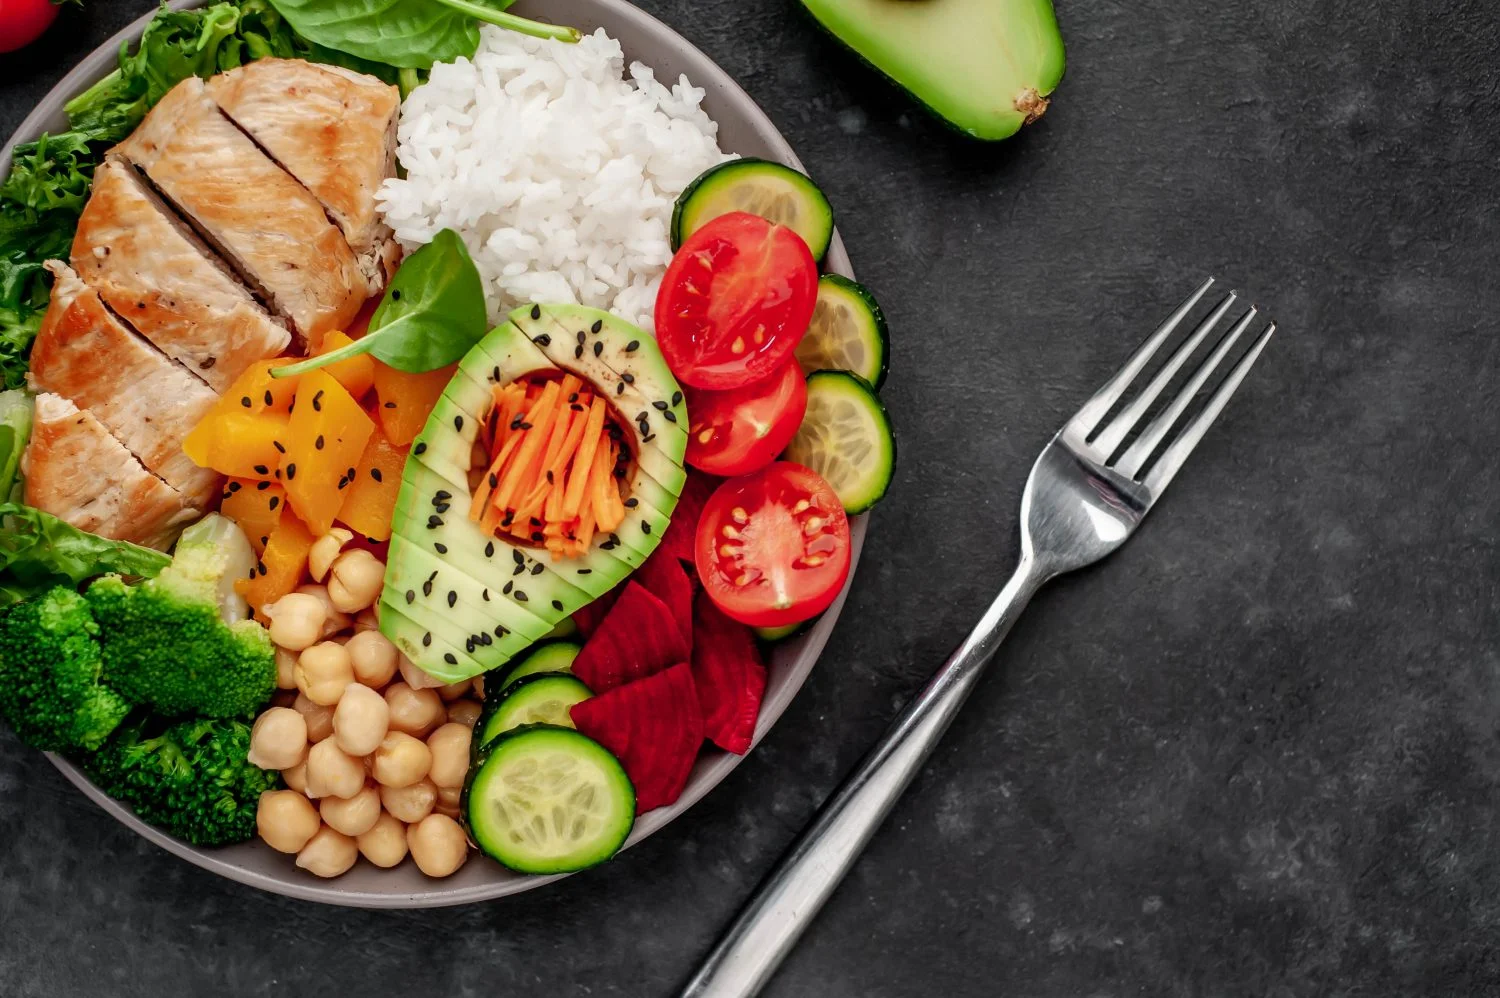 ¿Cómo servir un plato para una alimentación saludable? / metabolismo / aumento de peso